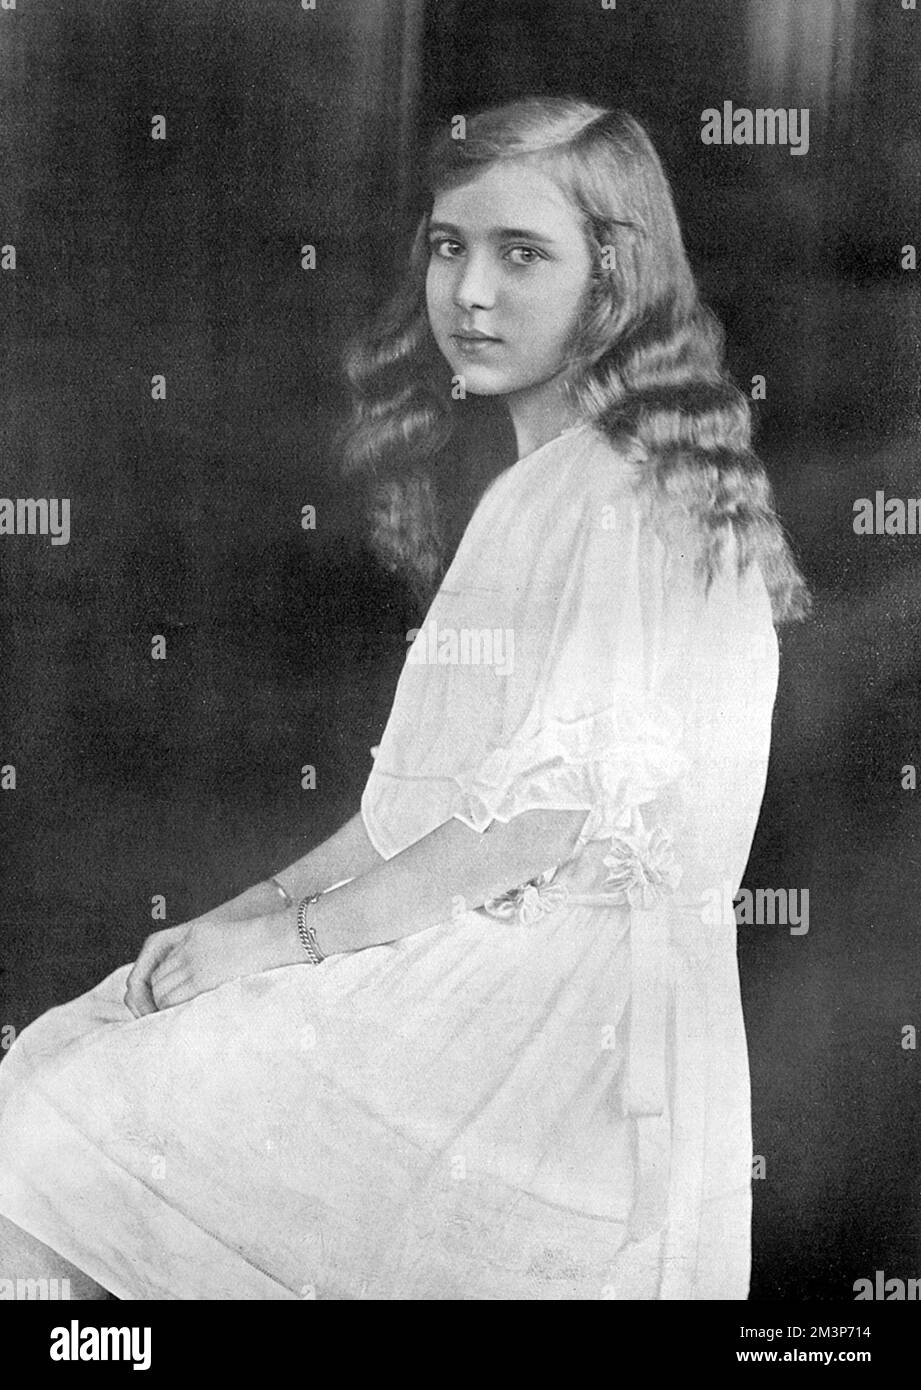 Principessa Ingrid di Svezia (1910-2000), figlia del re Gustav VI Adolf di Svezia, futura moglie del re Frederik IX di Danimarca, nipote del duca di Connaught e di conseguenza grande figlia della regina Vittoria. Nella foto, all'età di 12 anni, quando era in visita in Inghilterra con suo padre. Data: 1922 Foto Stock